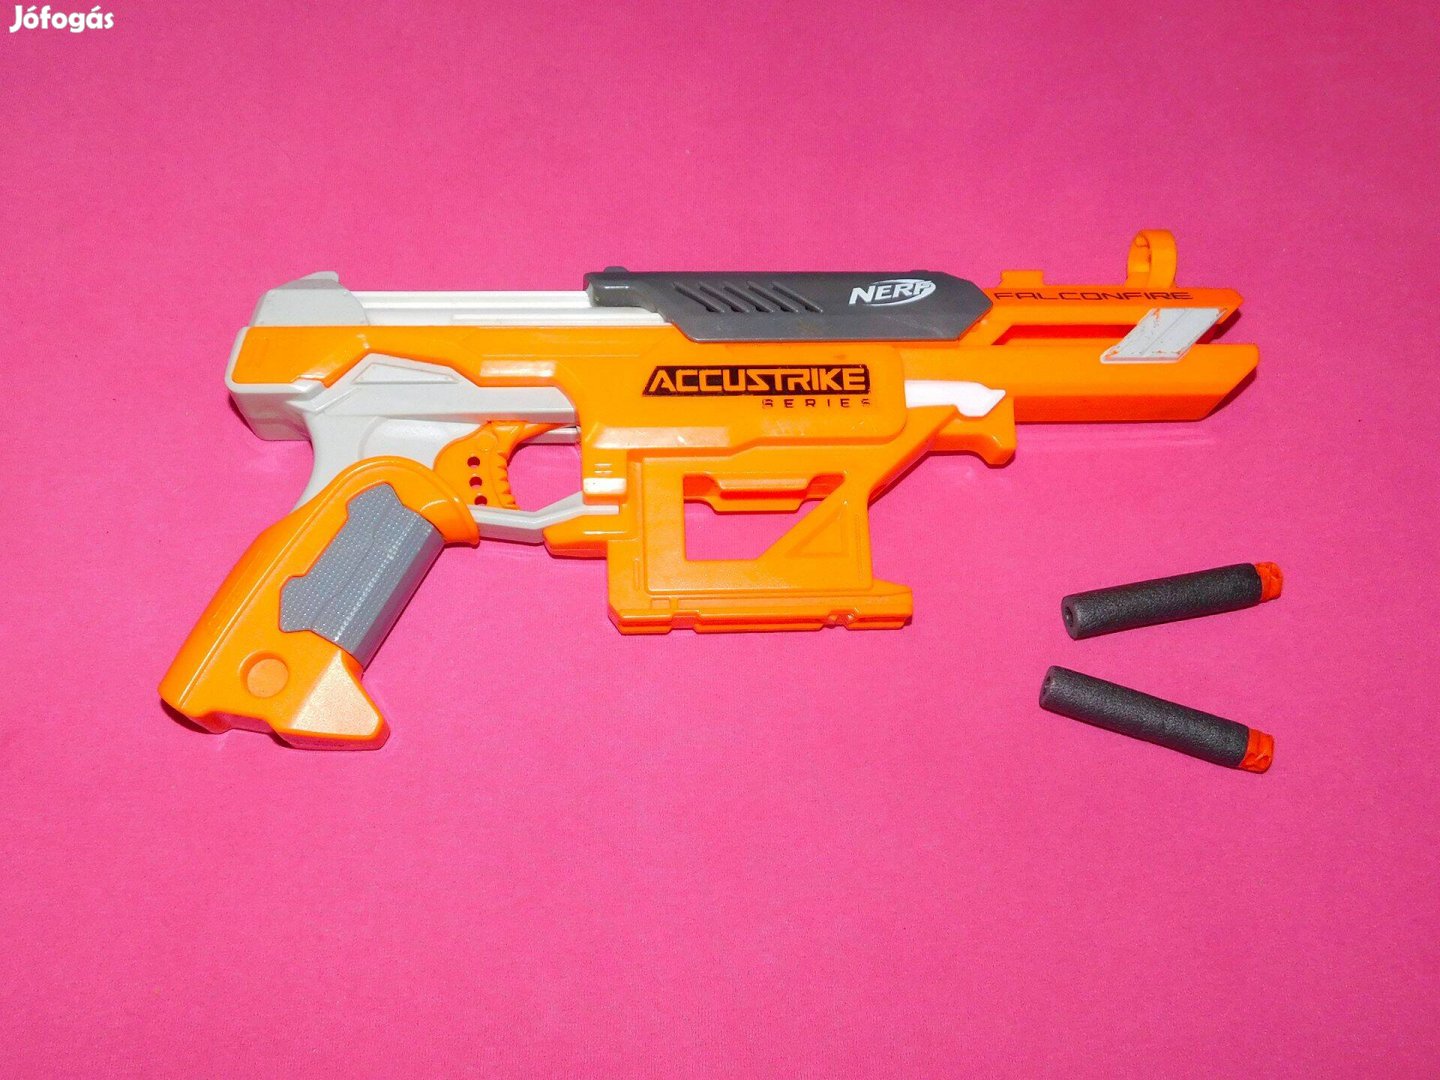 Nerf Accustrike szivacslövedékes játékfegyver, játékpuska, 35 cm